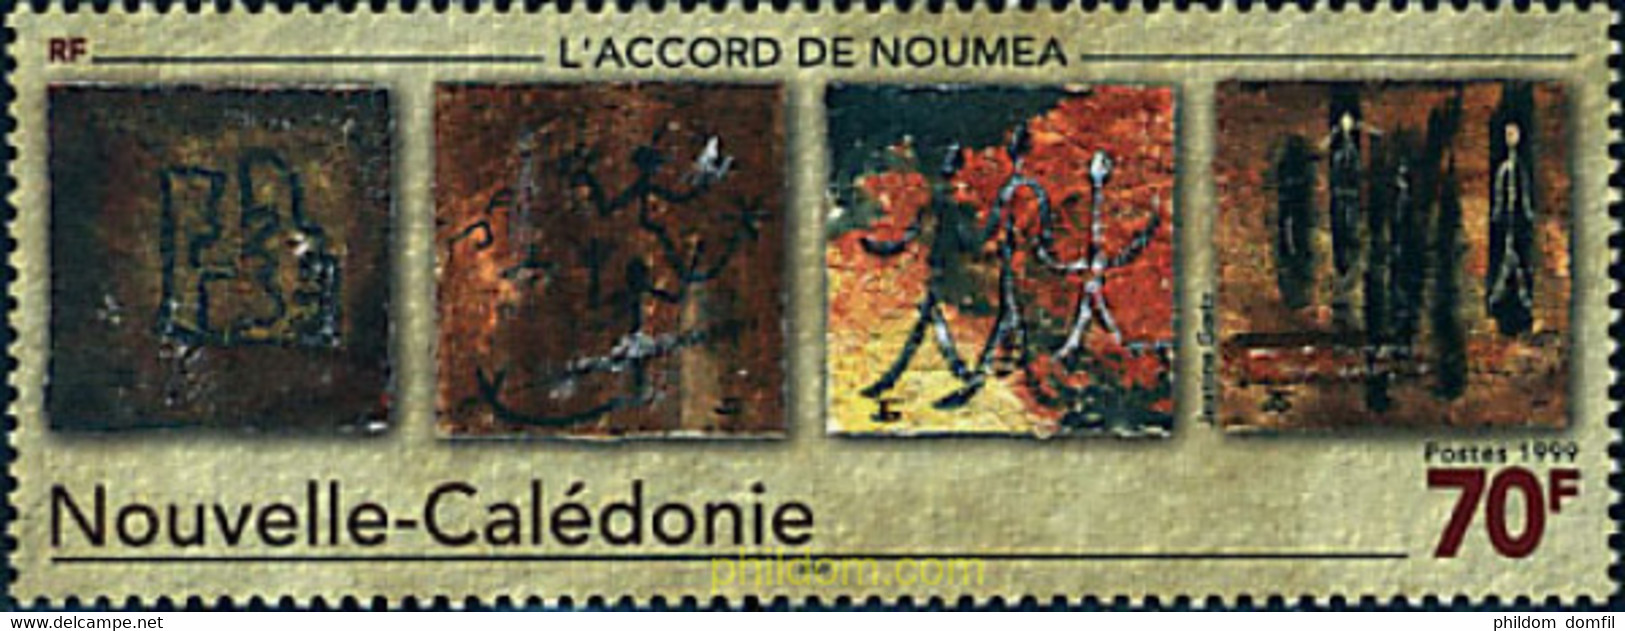 67933 MNH NUEVA CALEDONIA 1999 ACUERDO DE NOUMEA - Usados